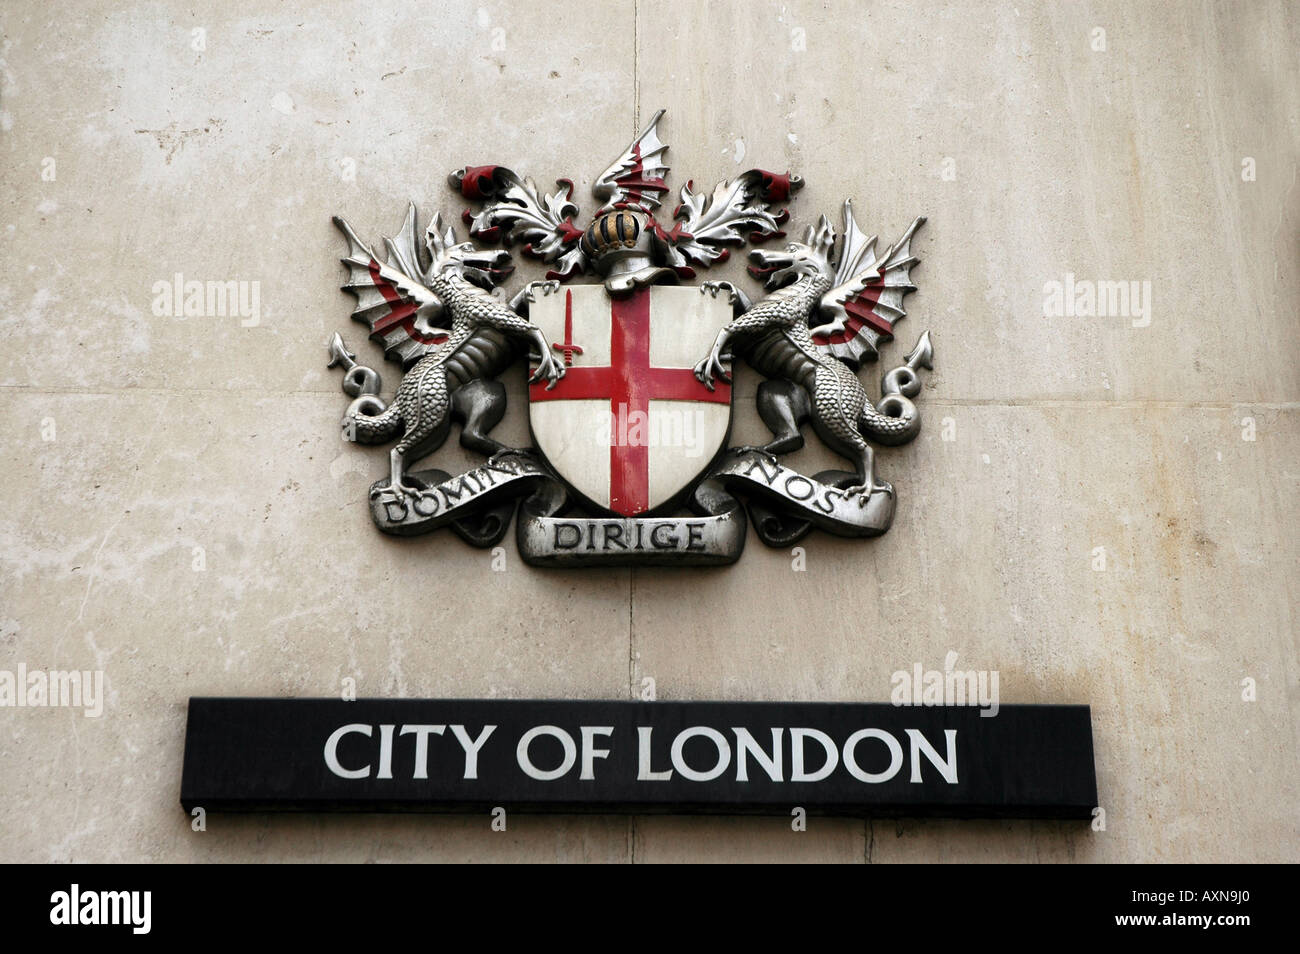 Ville de London district signe avec devise latine domine dirige nos (Seigneur, guide-nous), London, UK Banque D'Images